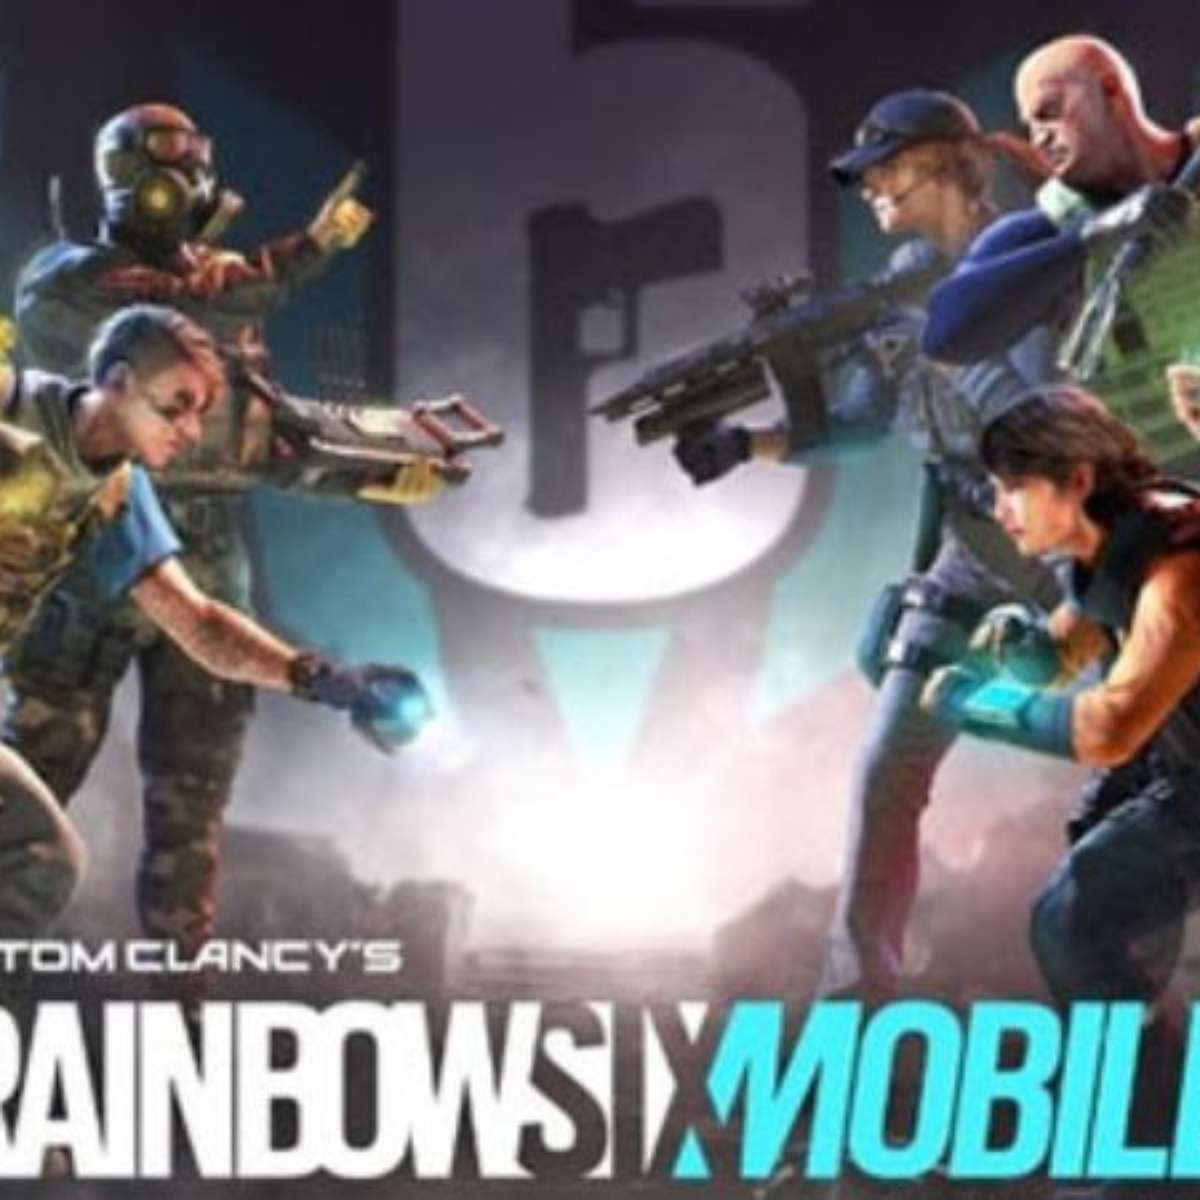 Rainbow Six Mobile: primeiras impressões sobre o novo jogo da franquia